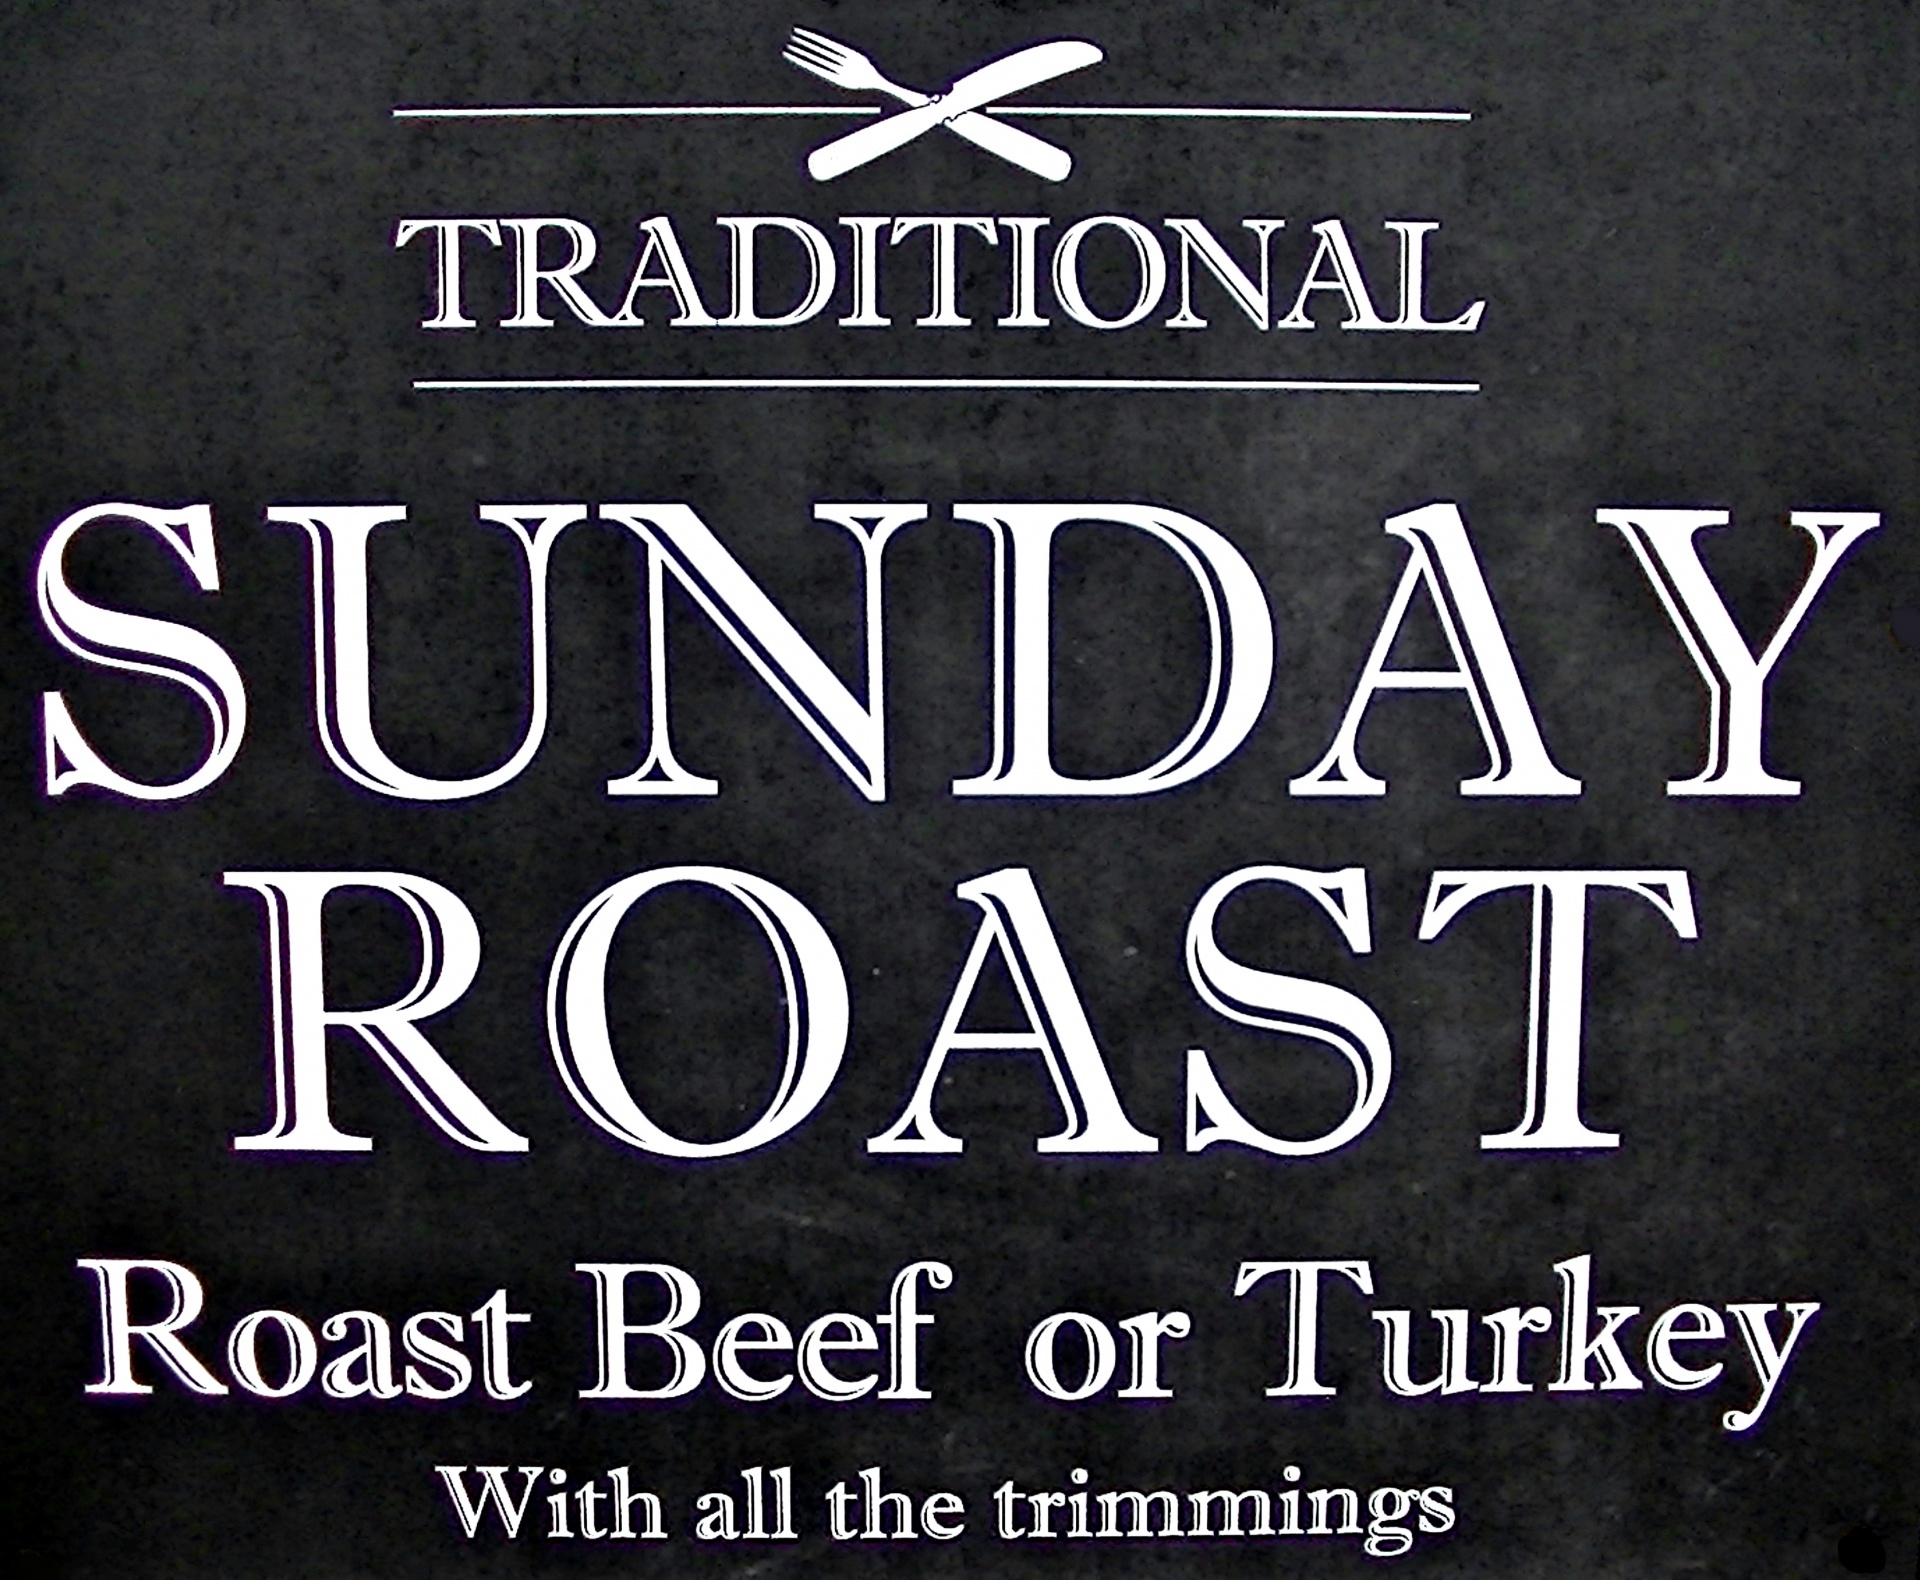 Vegetable and Turkey Pot Roast